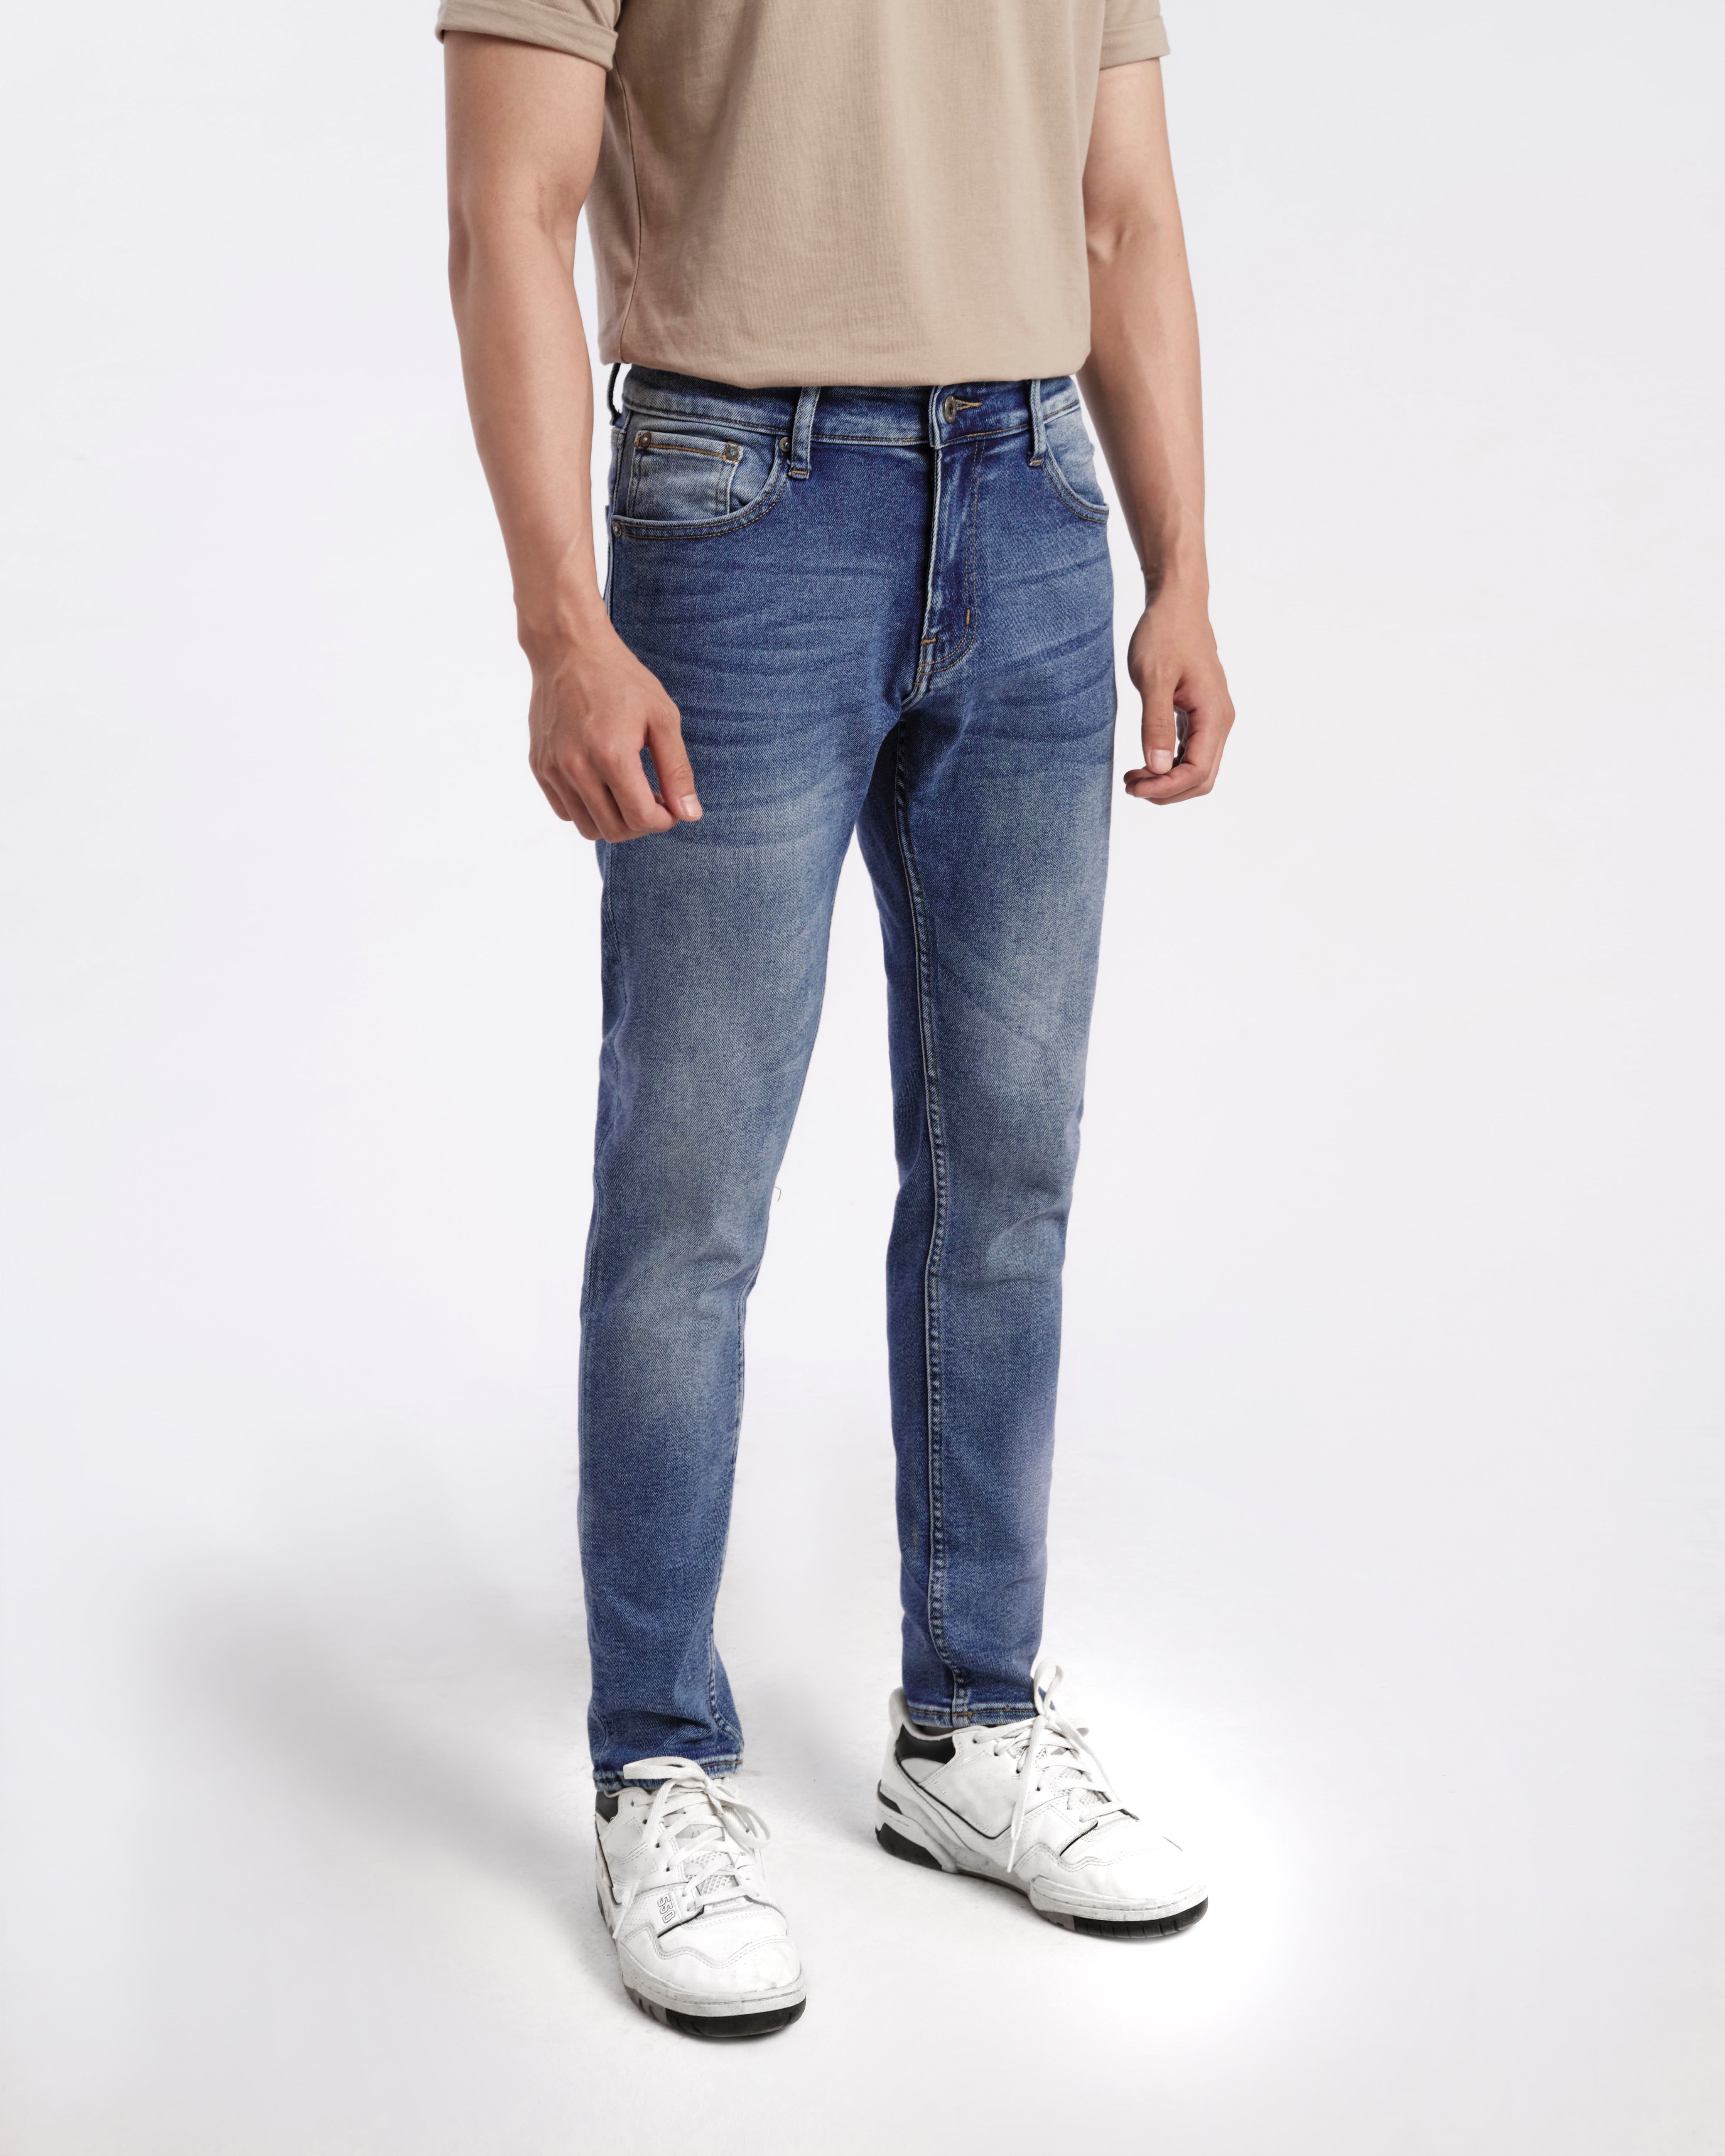 Quần jean nam xanh cao cấp MENFIT 0532 chất denim co giãn nhẹ 2 chiều, chuẩn form, thời trang